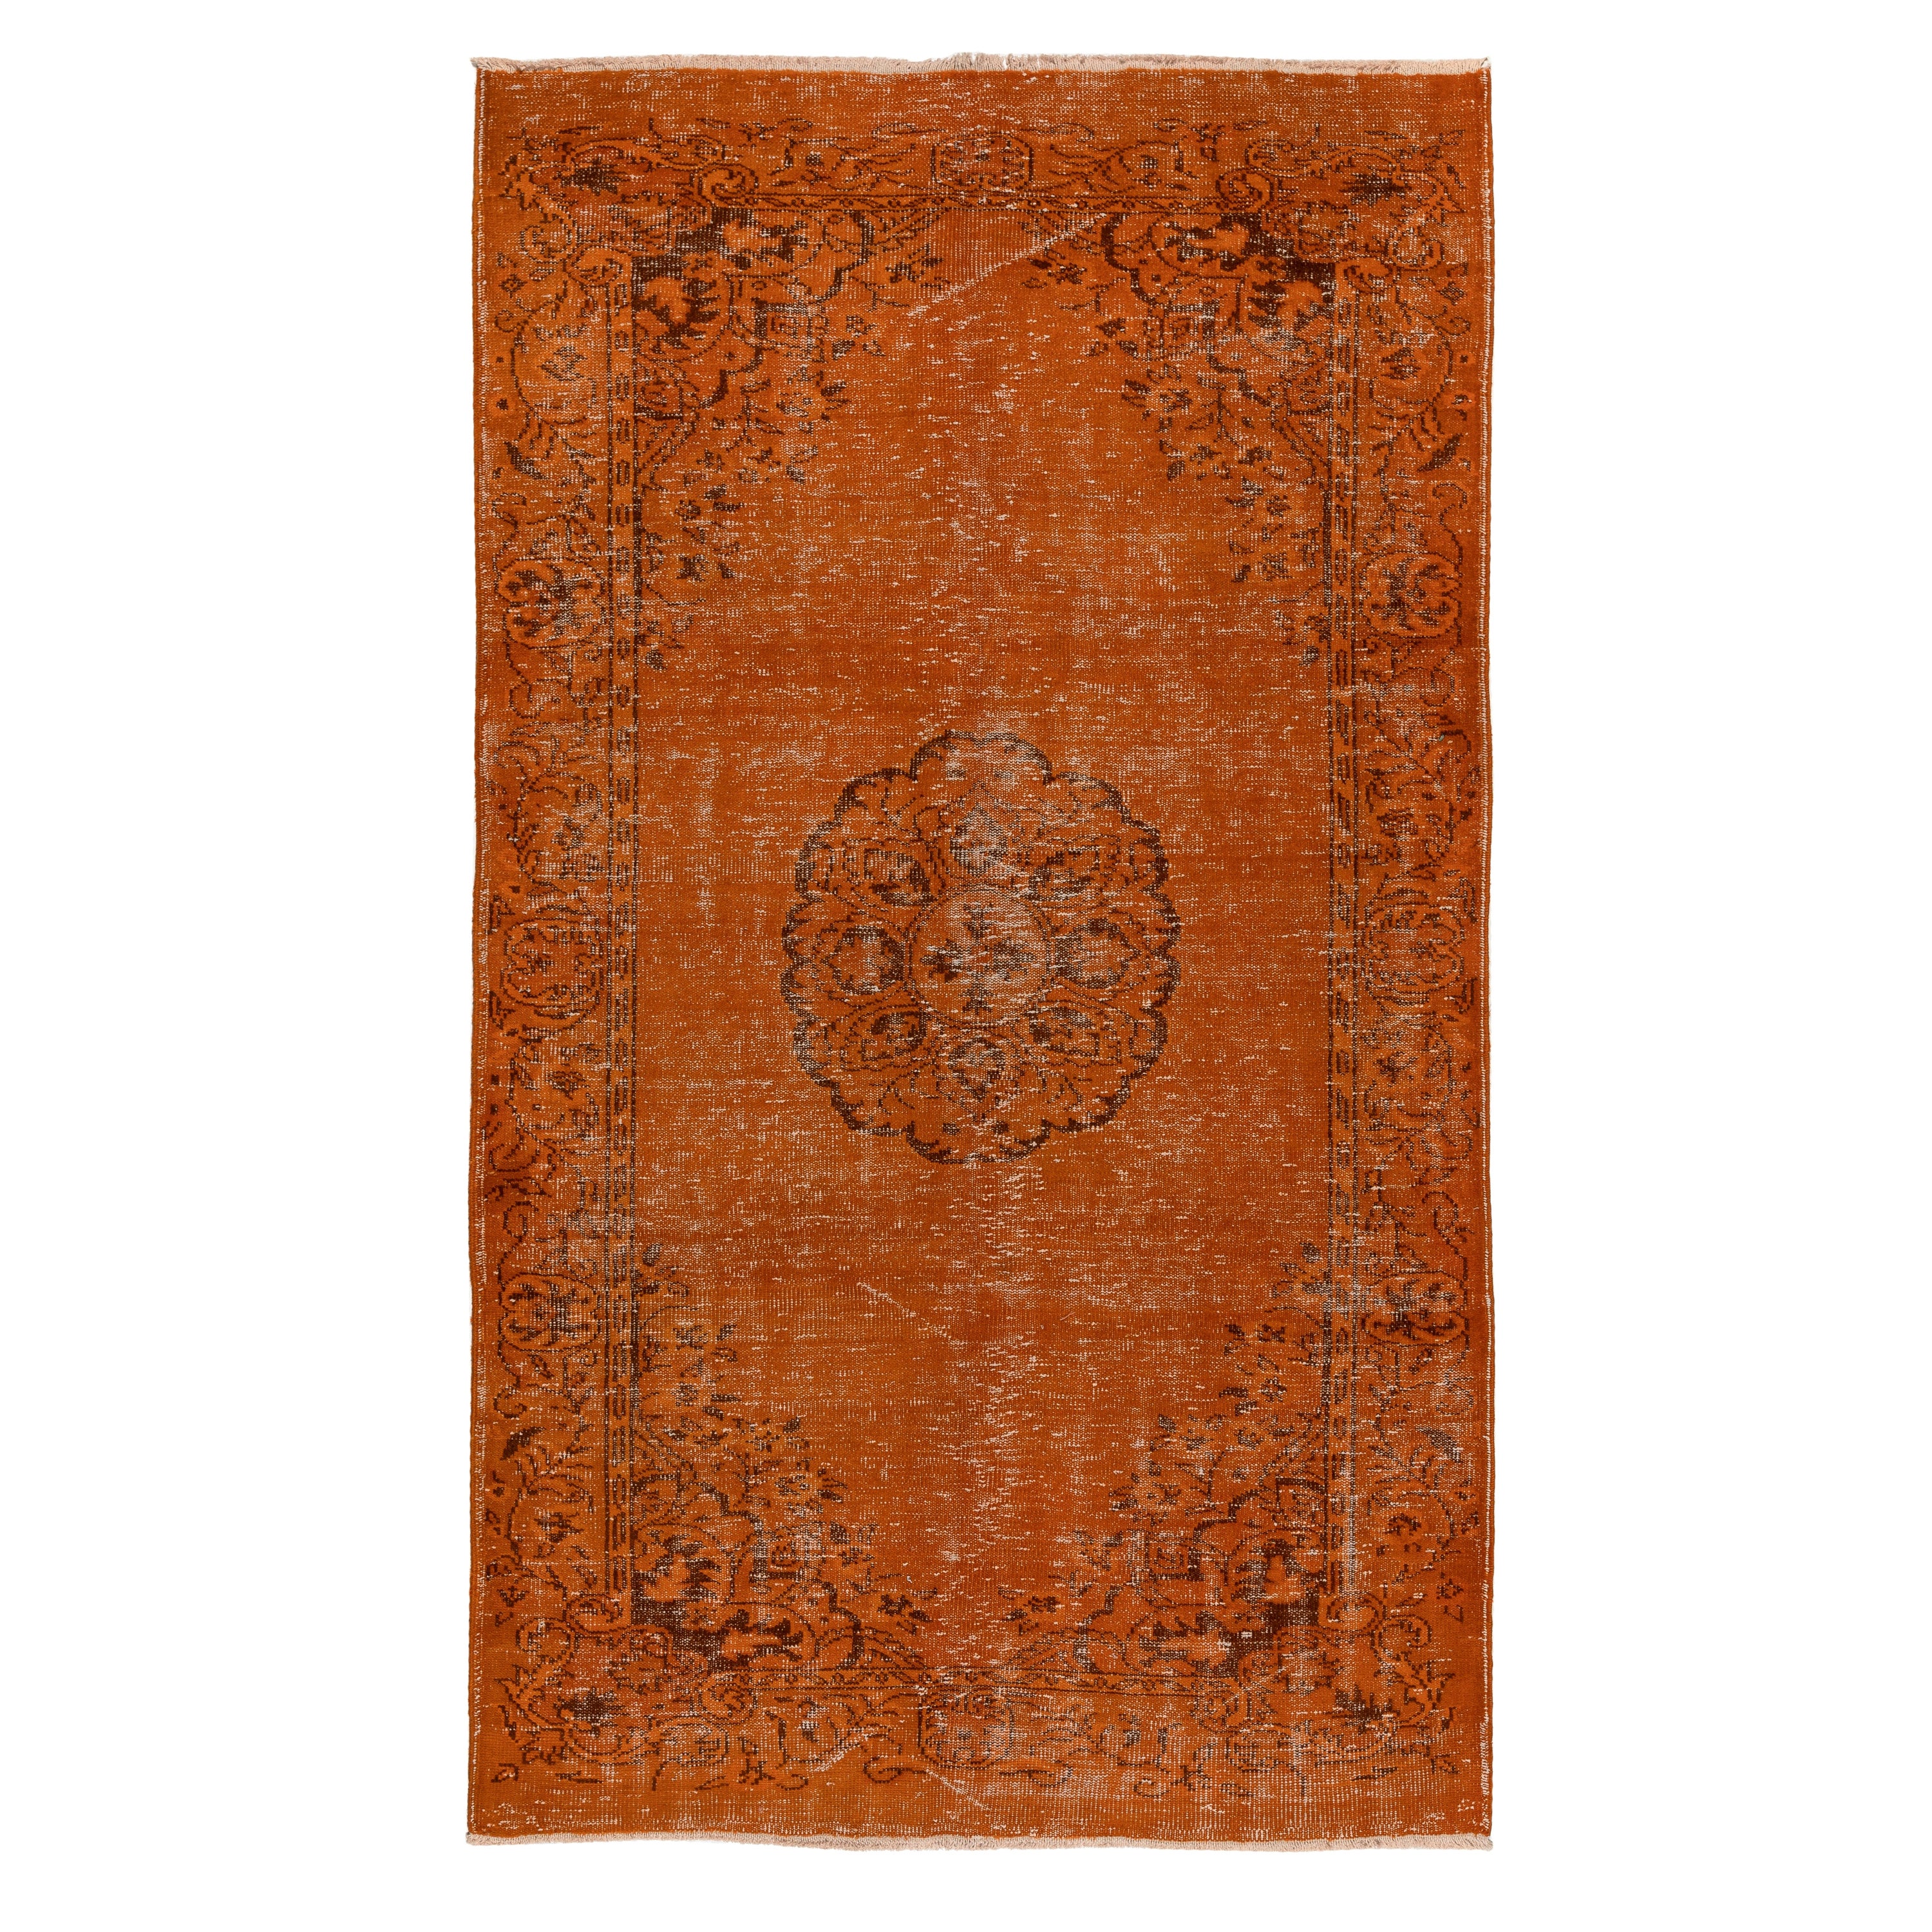 5.6x9.3 Ft Handgefertigter türkischer Vintage-Teppich in Orange, moderner Art déco-Teppich im Angebot